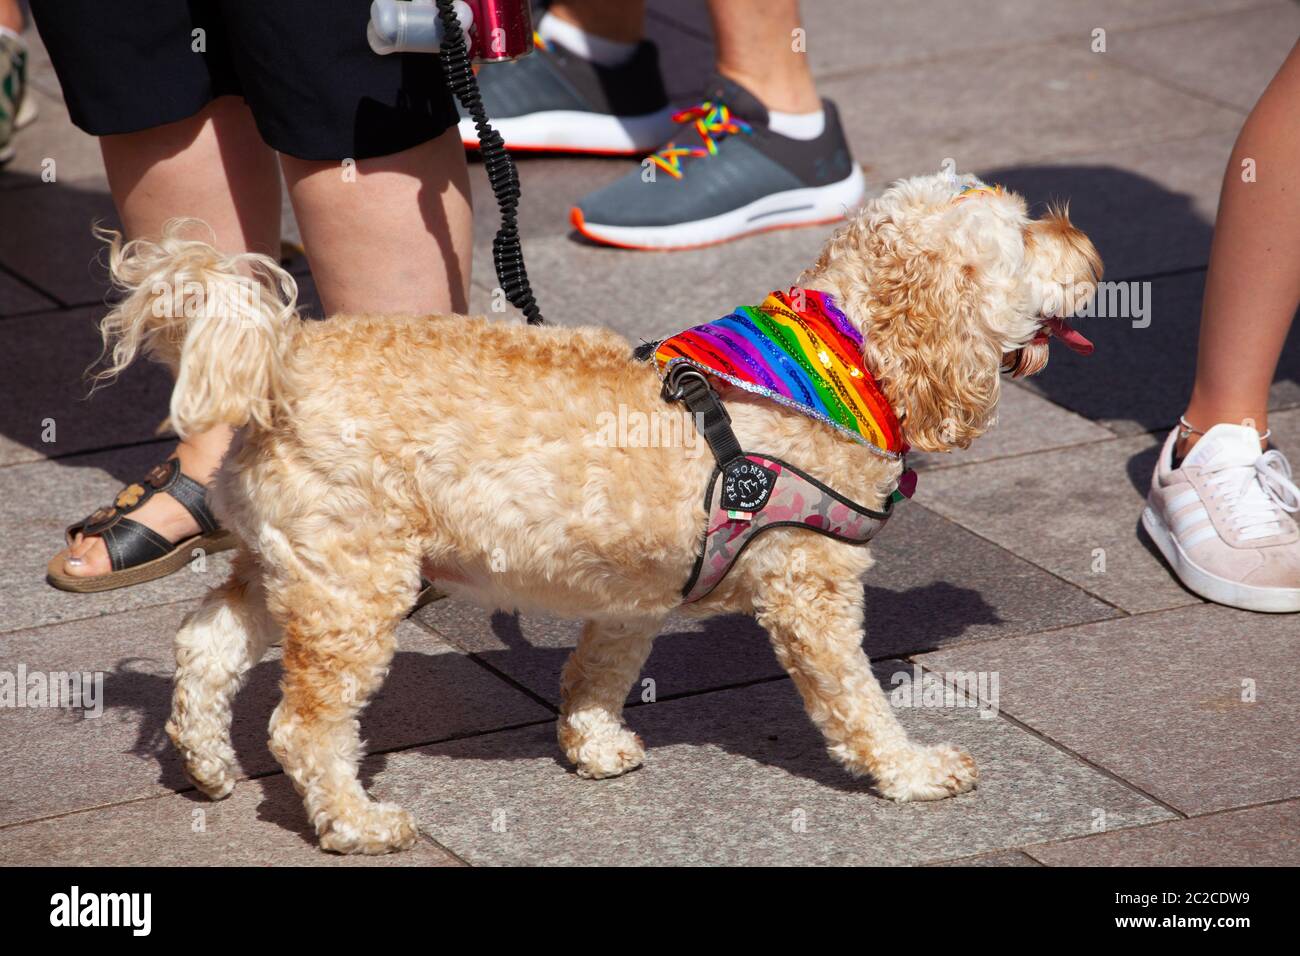 Chien portant un drapeau arc-en-ciel LGBTQI lors de la Marche de la fierté gay 2019 à Cardiff, Pride Cymru. Banque D'Images